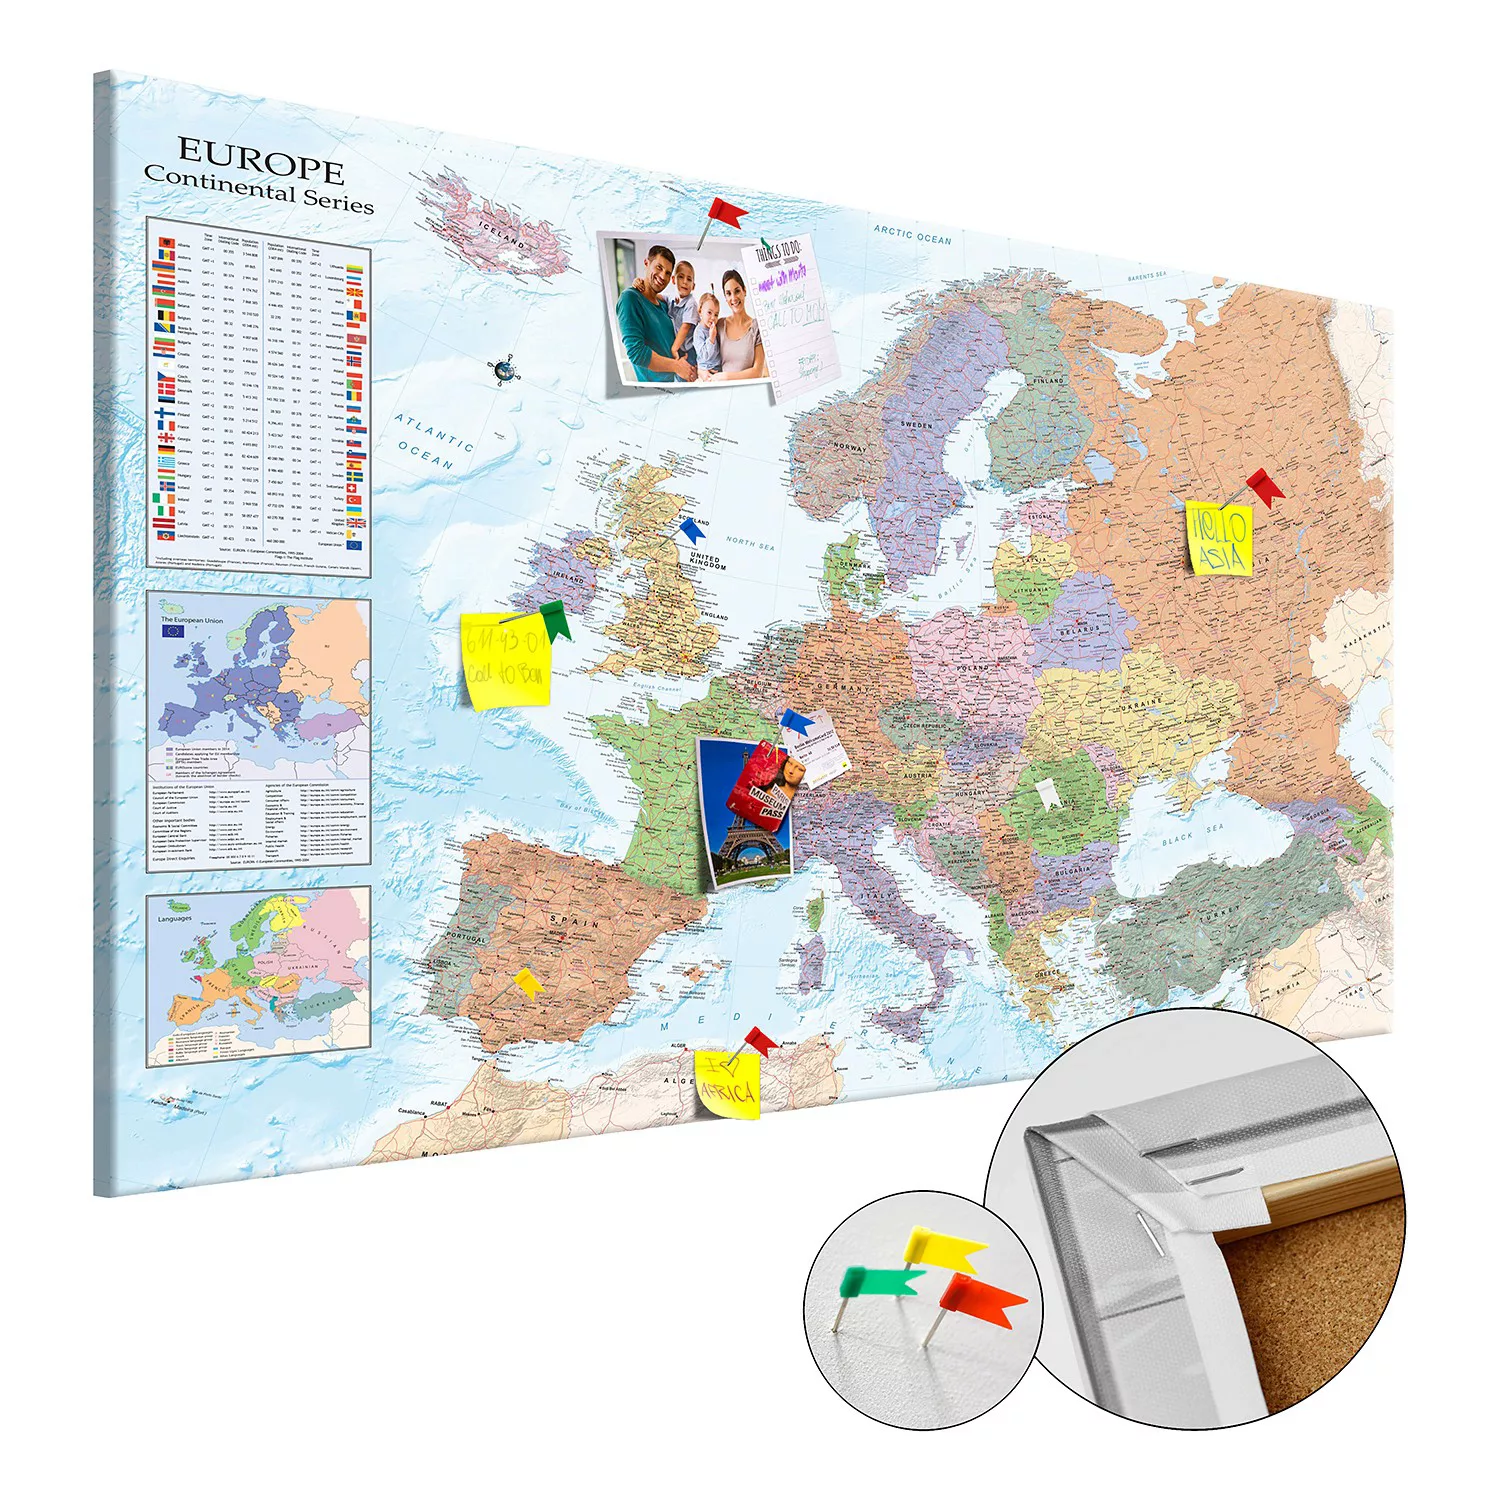 home24 Korkbild World Maps Europe günstig online kaufen